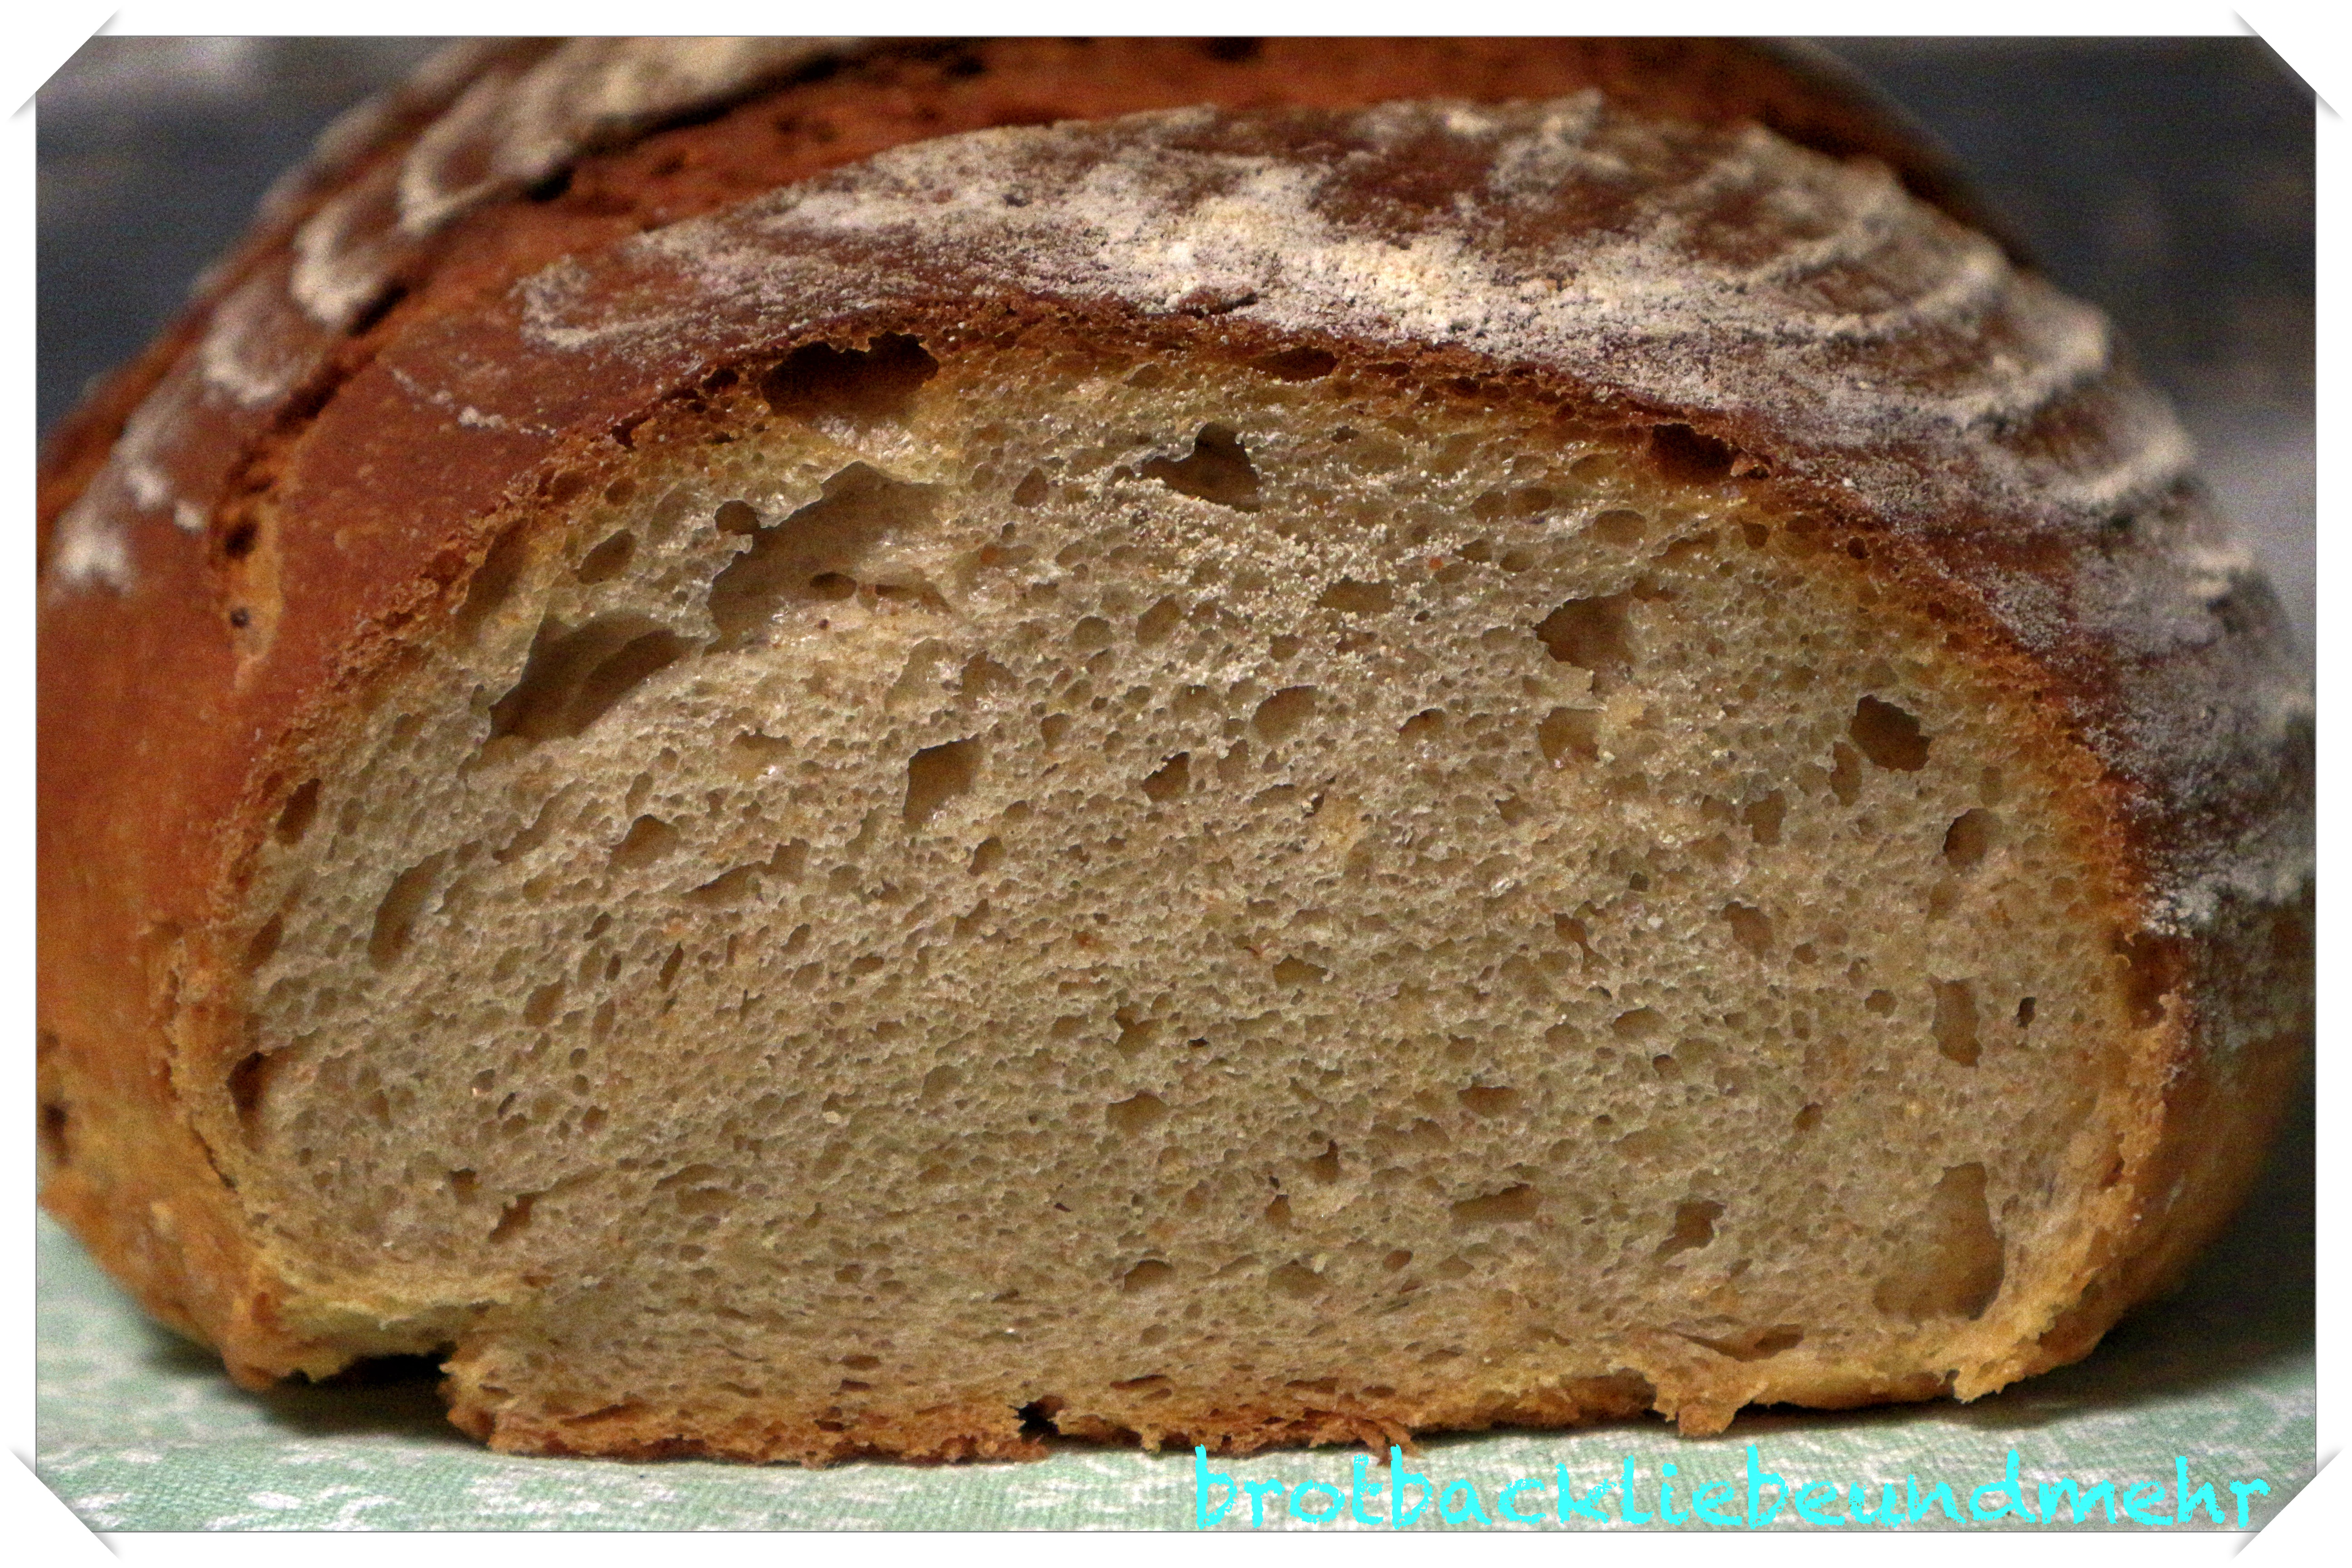 Weizen-Quinoa-Brot mit Quinoapops - Brotbackliebe ... und mehr